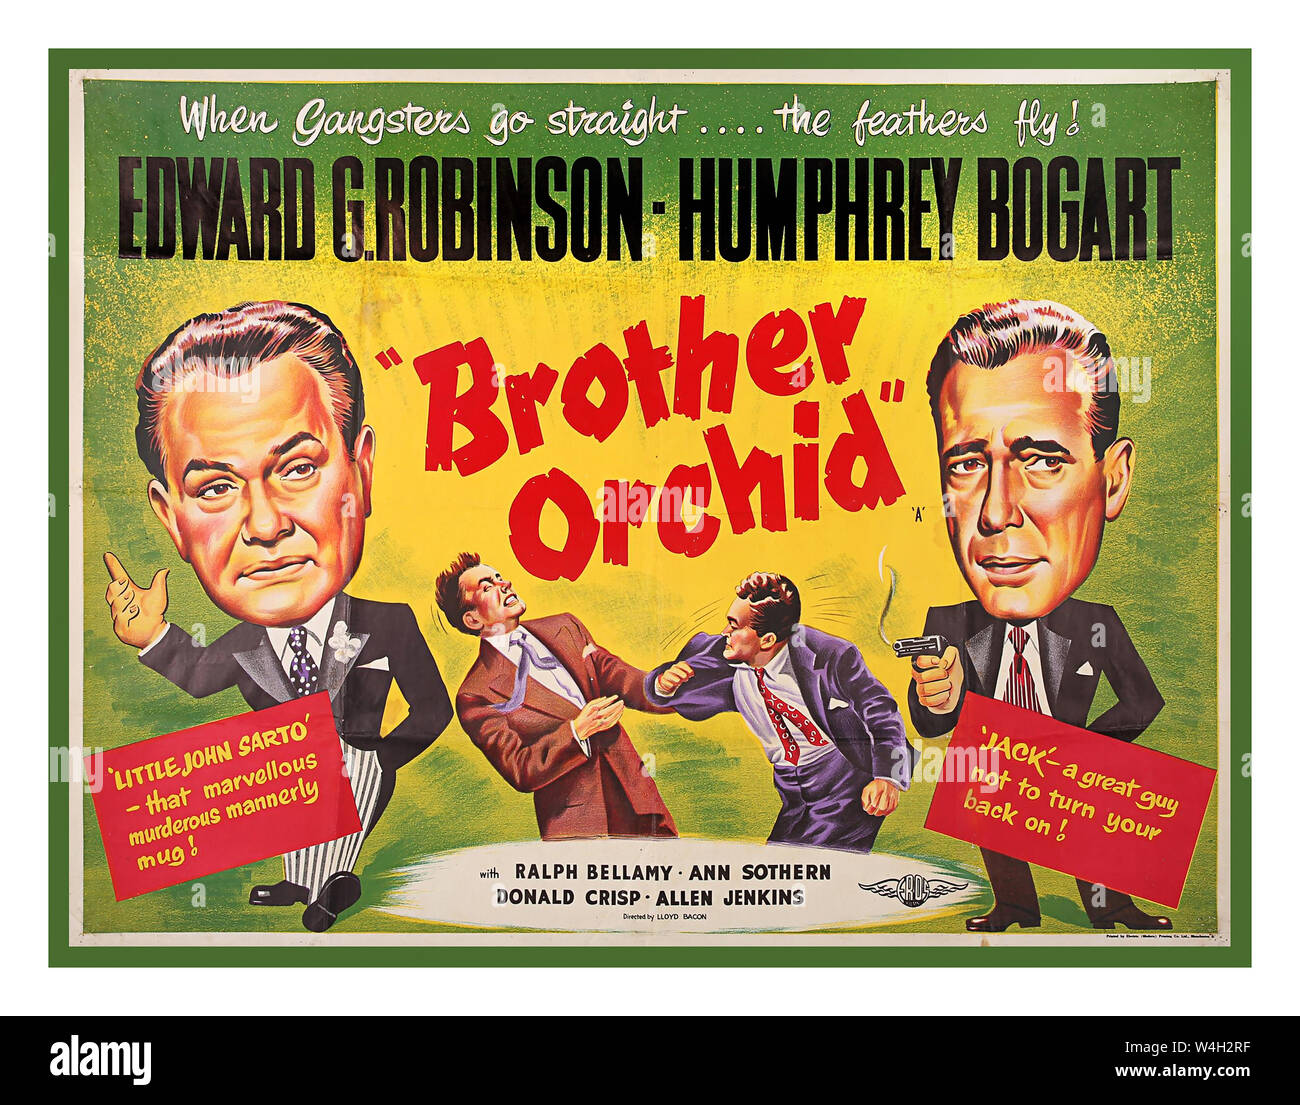 Vintage anni quaranta UK Film Cinema poster per il film americano "fratello Orchid' full color illustrazione per questa pellicola 1940. Il poster presenta la caricatura di rappresentazioni di Edward G. Robinson e Humphrey Bogart. Foto Stock